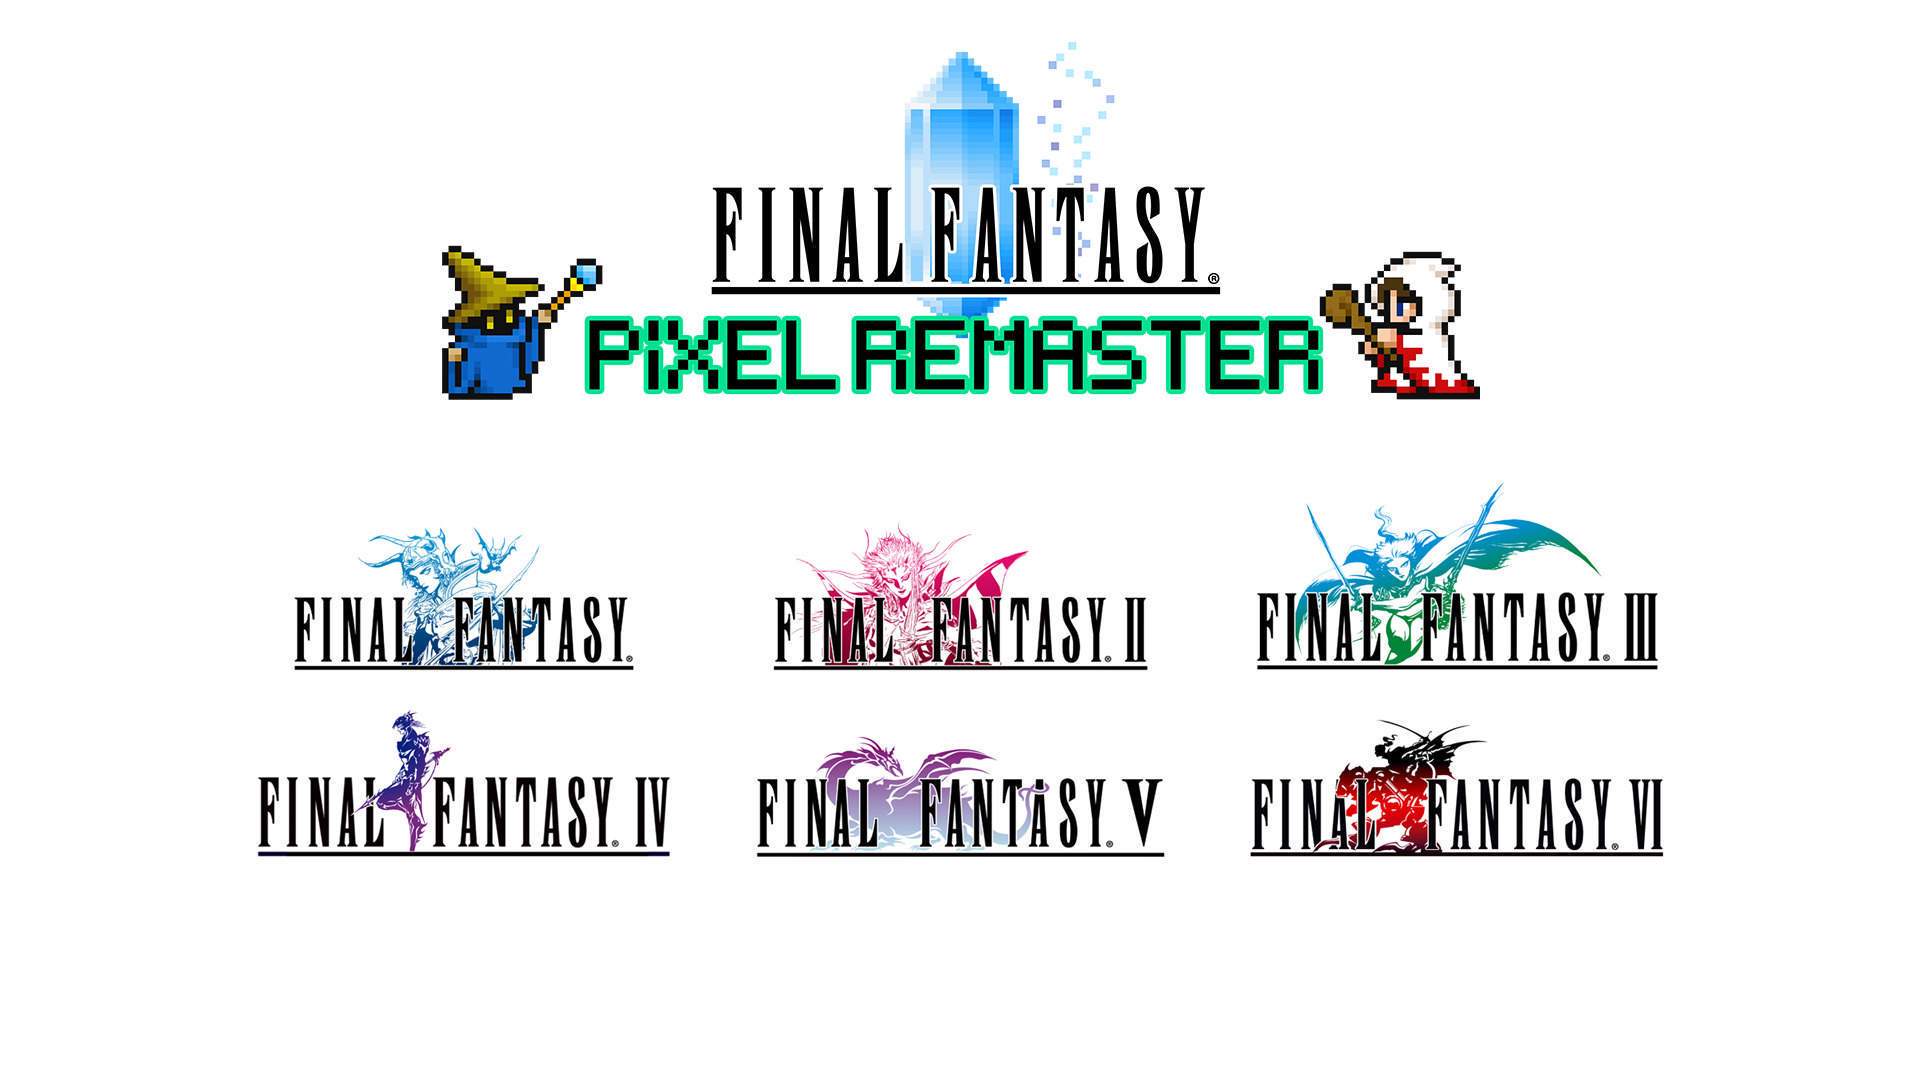 Logo FINAL FANTASY Pixel Remaster affiché au centre & au-dessus sont des logos de FINAL FANTASY I-VI